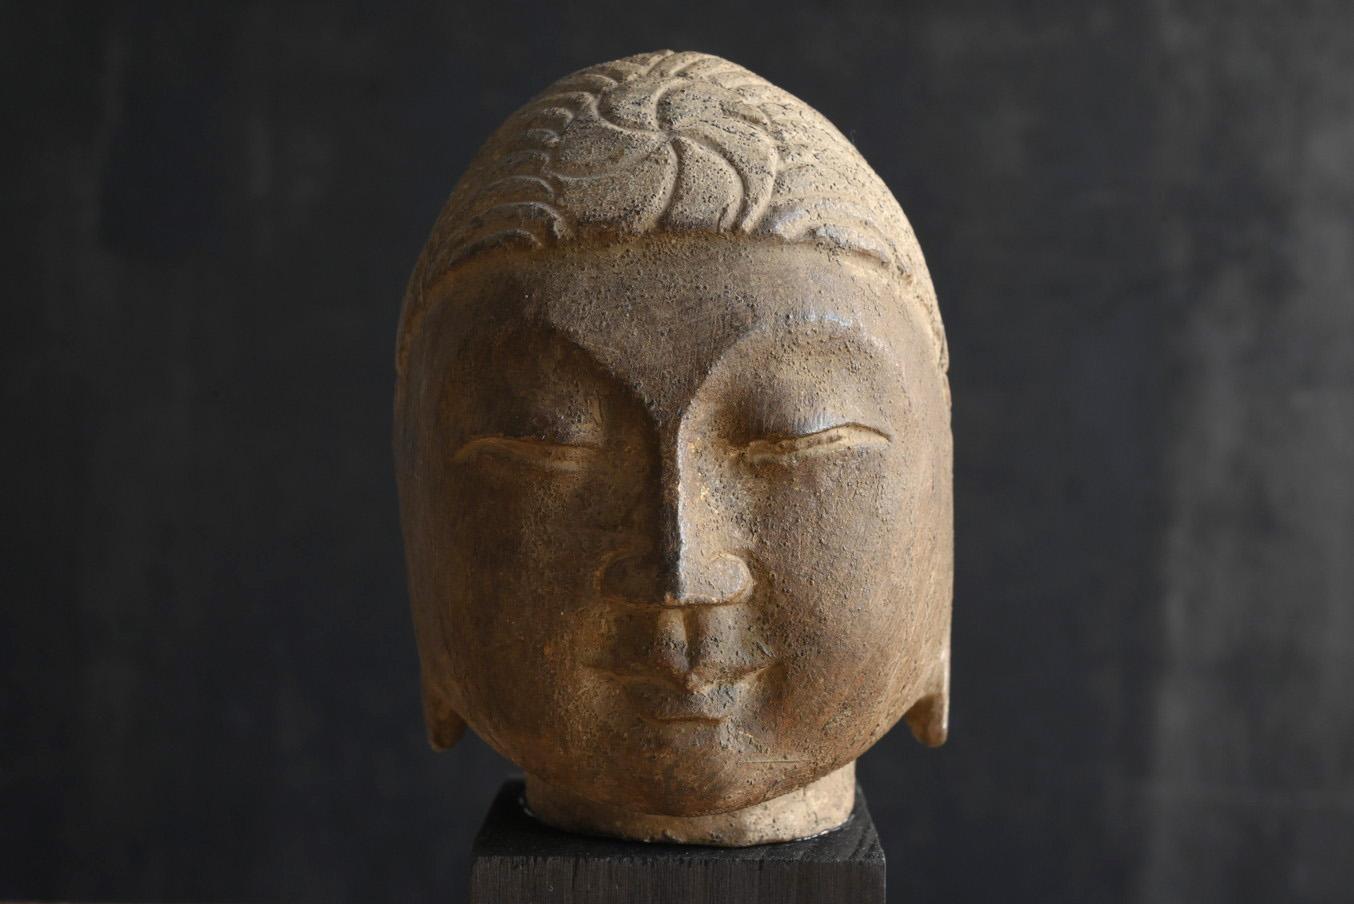 Dies ist ein alter Buddha-Kopf aus China.
Sie stammt aus der Zeit vor dem 19. Jahrhundert und könnte sogar noch älter sein.
Das Gesicht dieses Buddhakopfes ist ordentlich und schön symmetrisch, der Mund ist fest zusammengezogen, der Nasenrücken ist